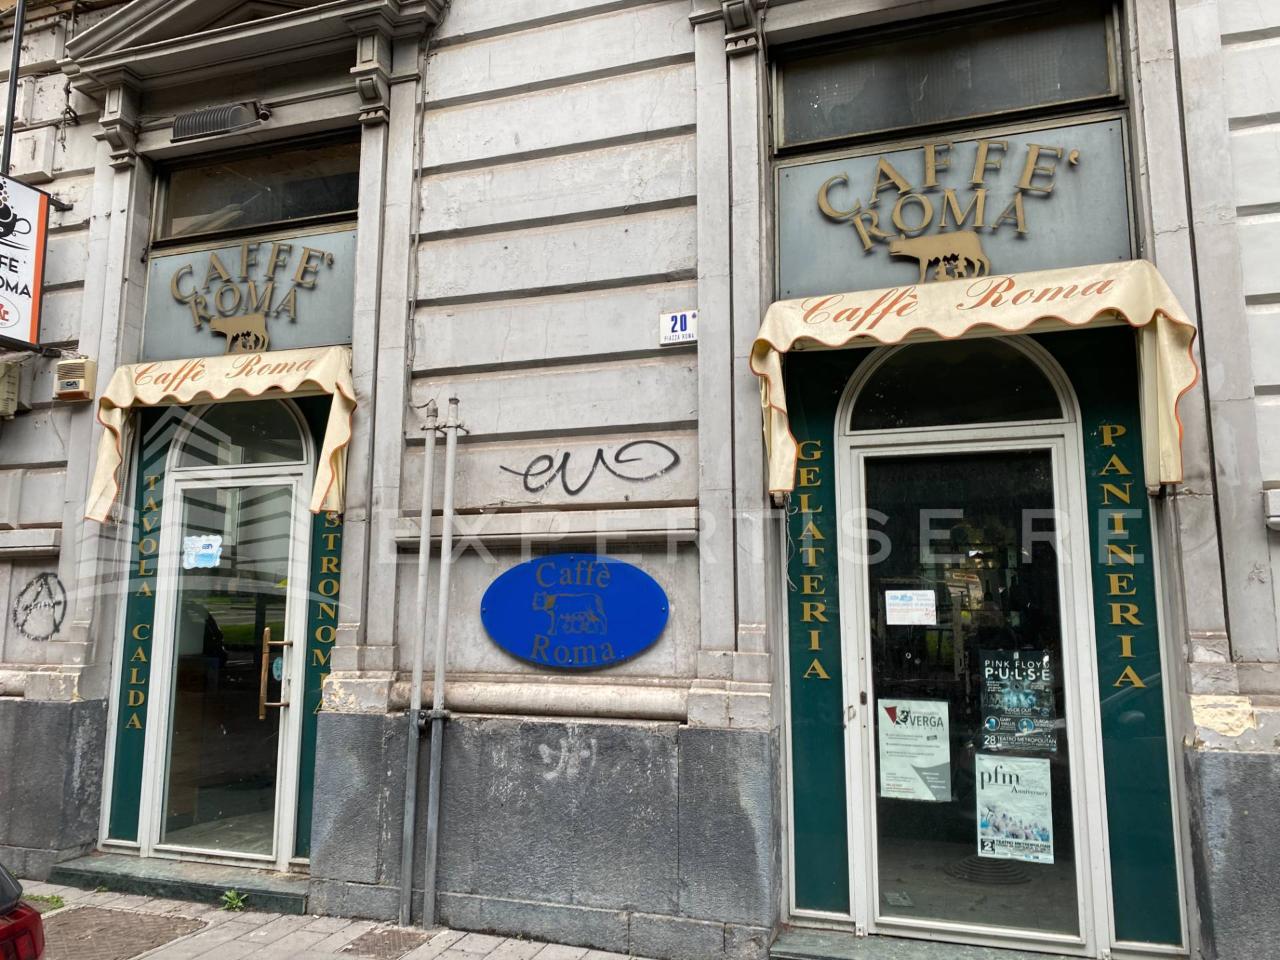 Negozio in affitto a Catania